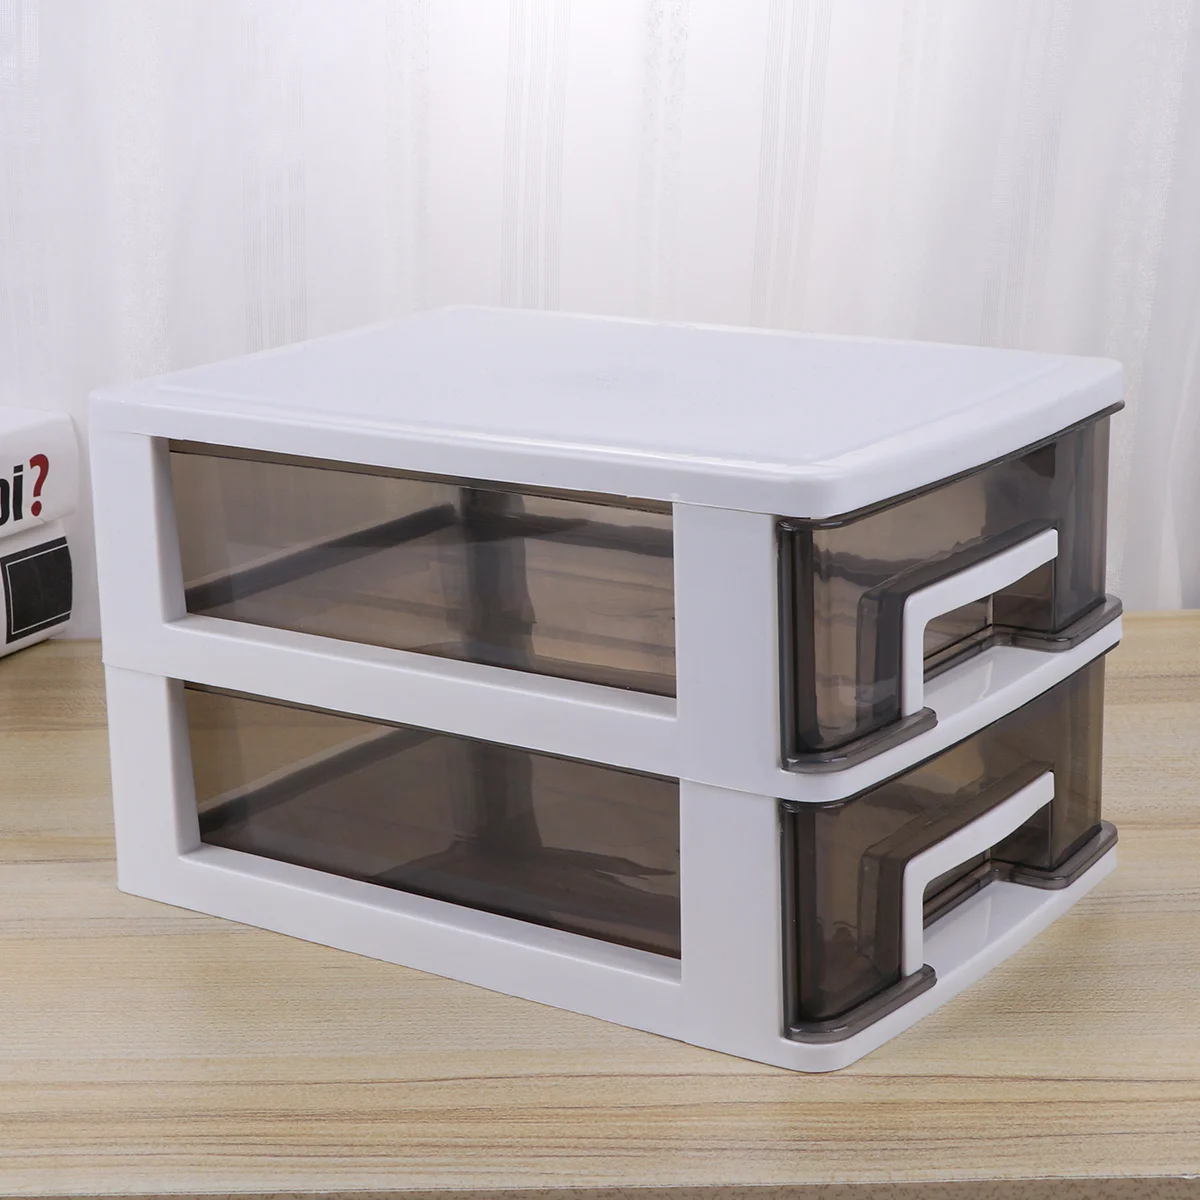 Организатор чекмедже кутия за съхранение тави отделение разделител домакински съдове стифиране кабинет кухня craftdesktop контейнер